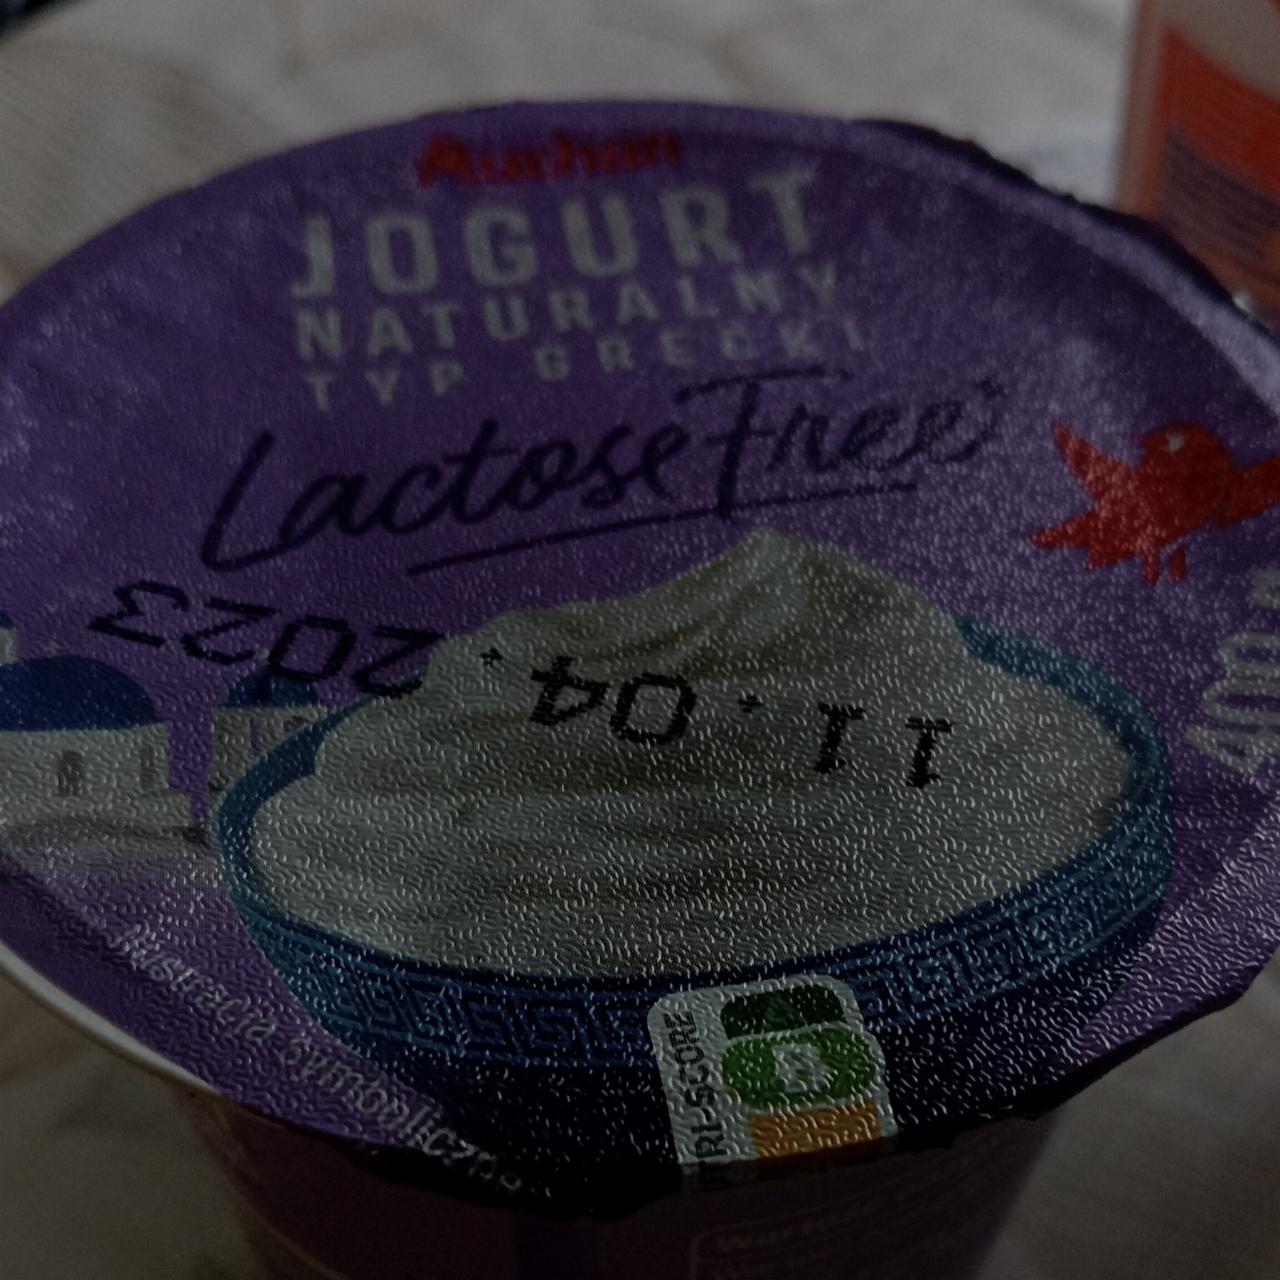 Zdjęcia - jogurt naturalny typ grecki bez laktozy Auchan